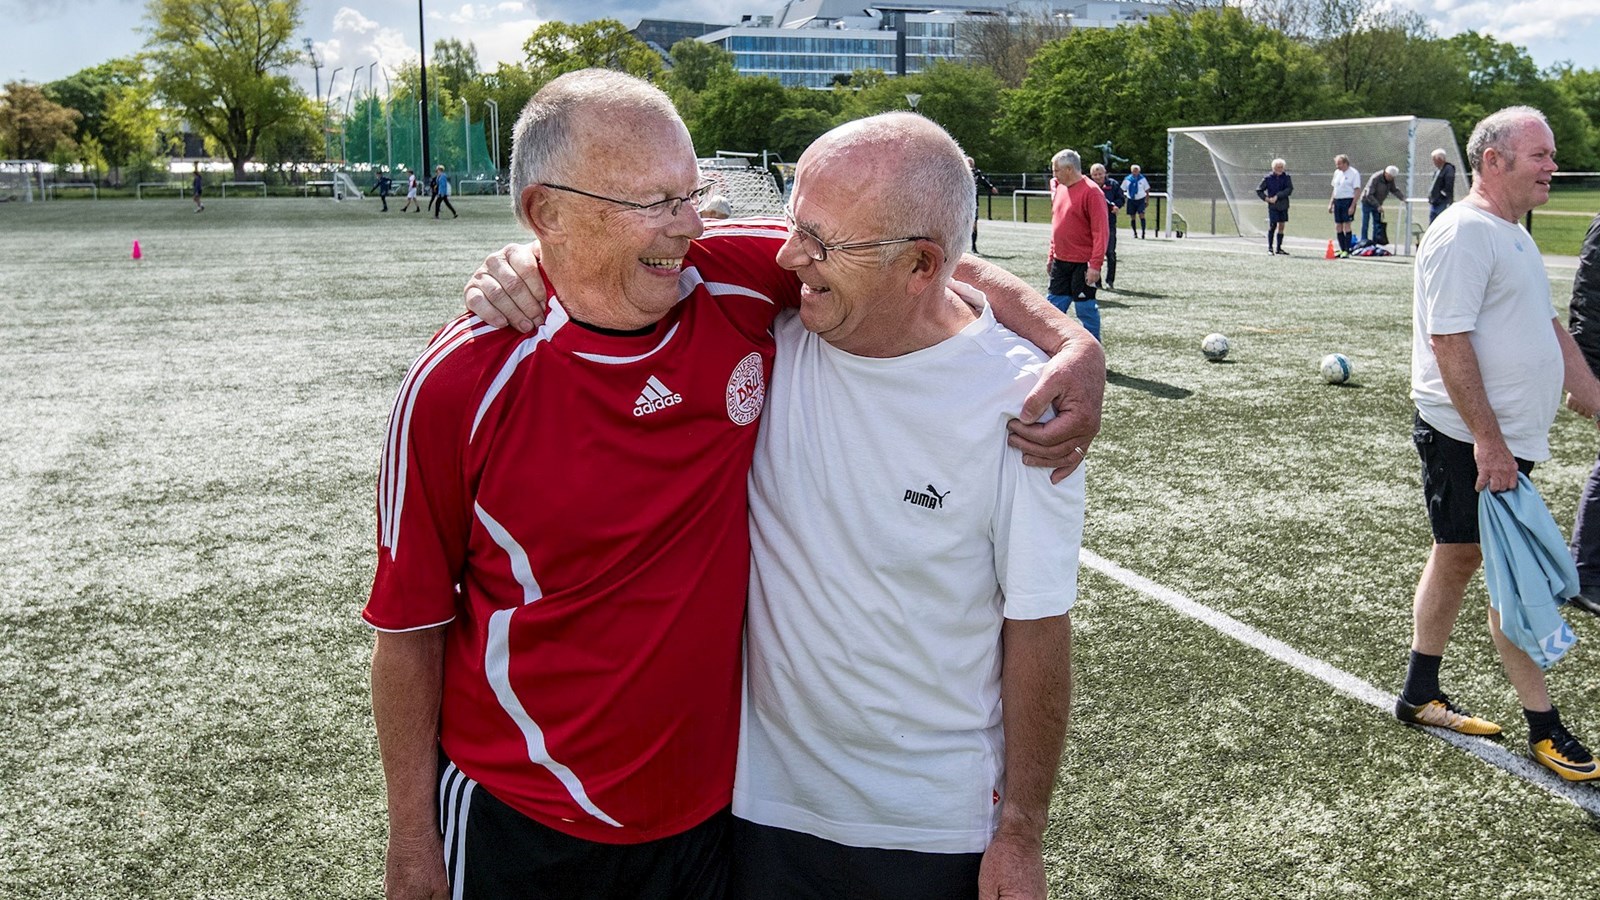 Fodbold skal hjælpe hjerte-kar-syge i bedre form